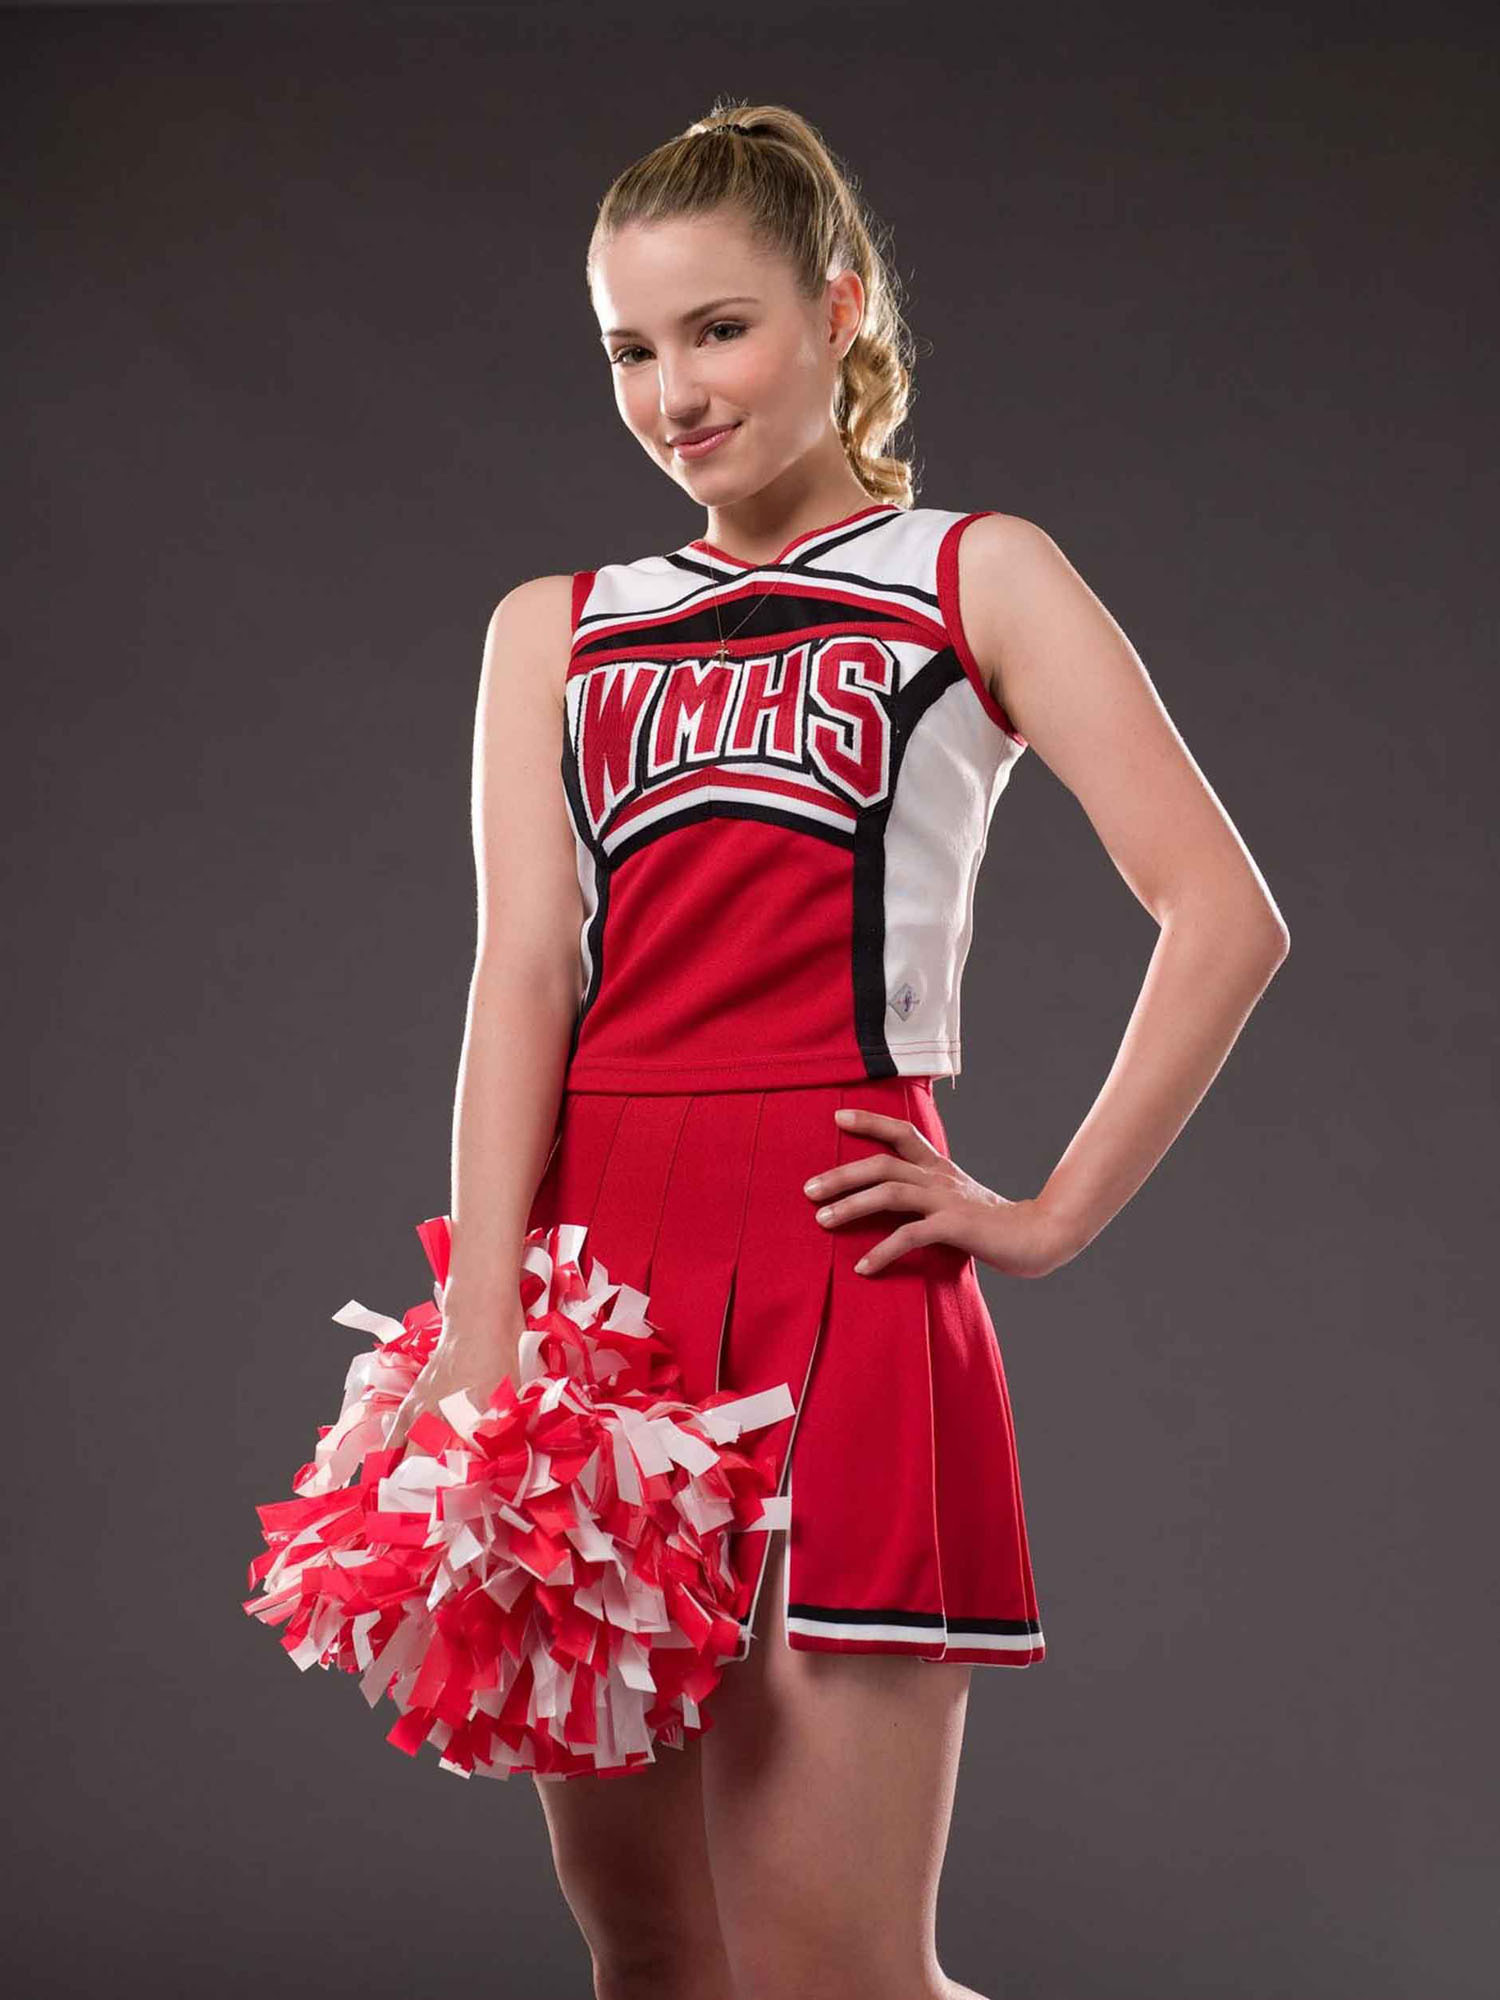 Quinn - Season 1 - Quinn Fabray foto (37916317) - Fanpop